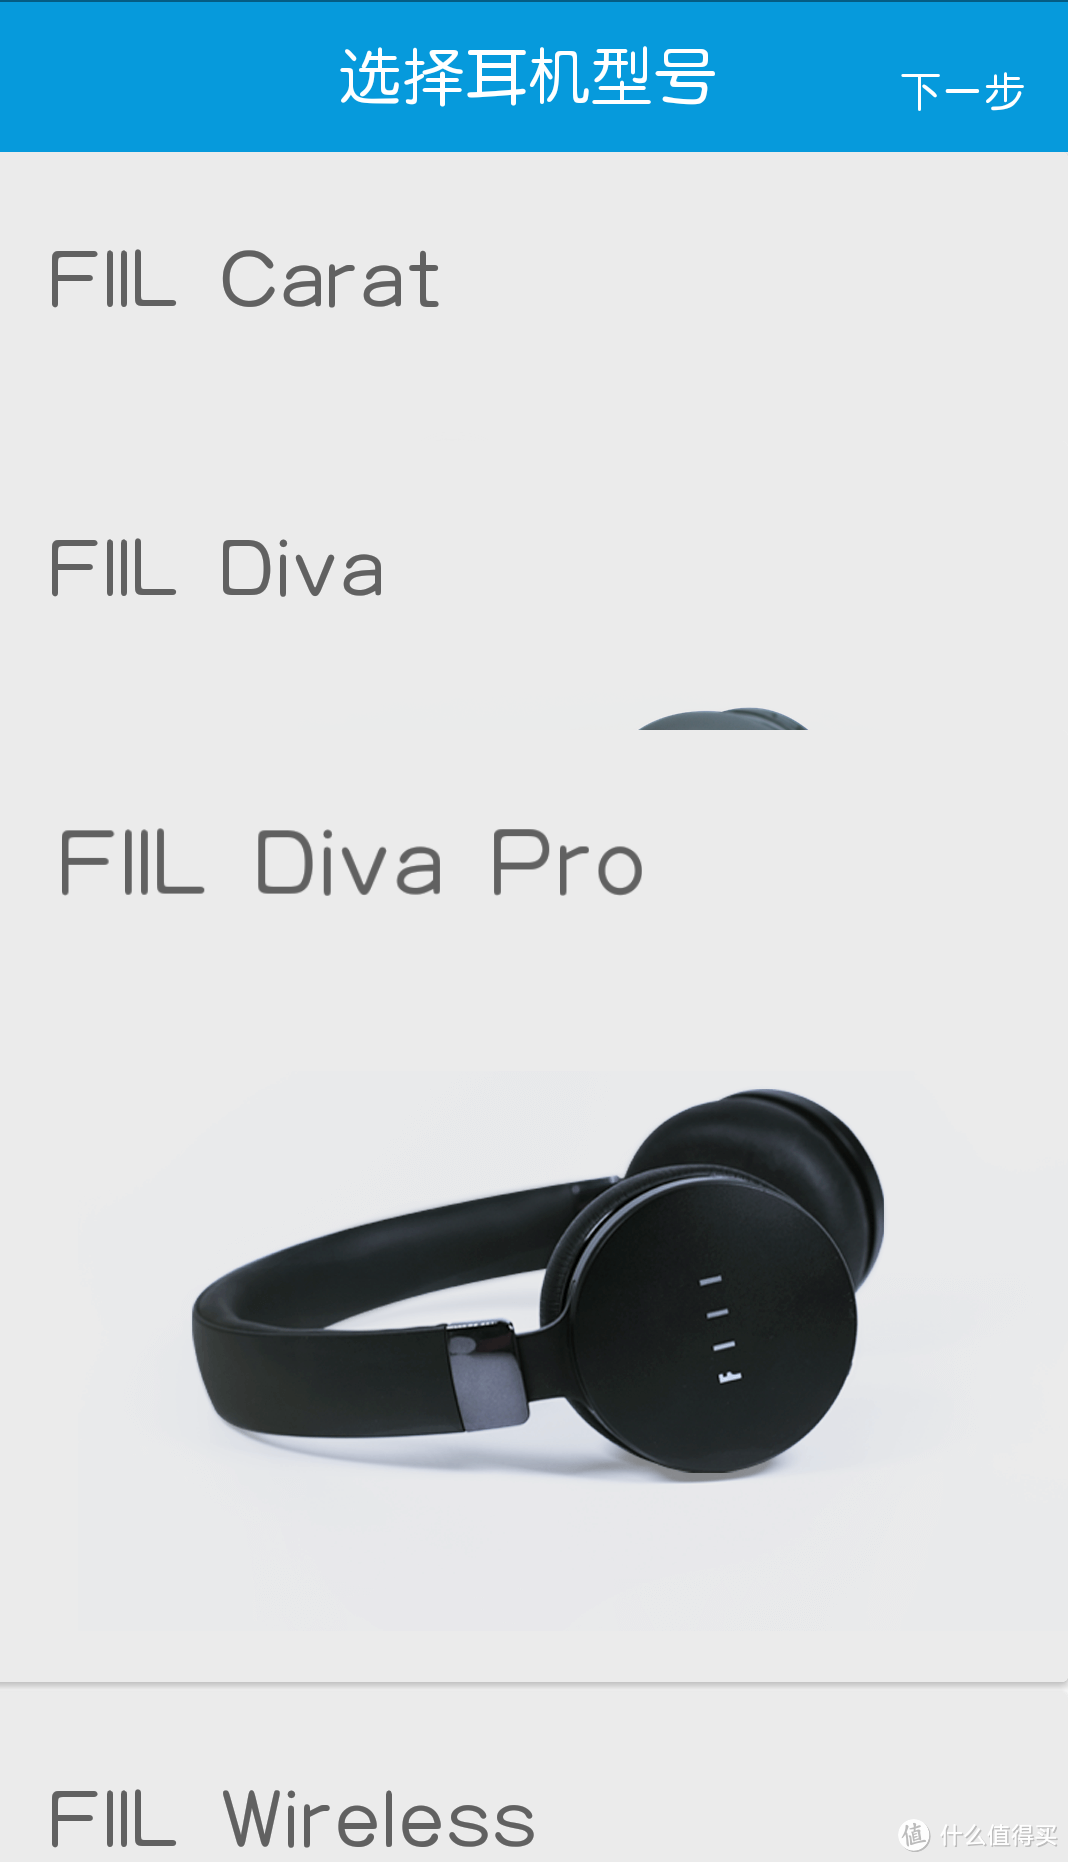 降噪效果比想象中更美好：FIIL Diva Pro对比 FIIL Diva智能降噪耳机评测